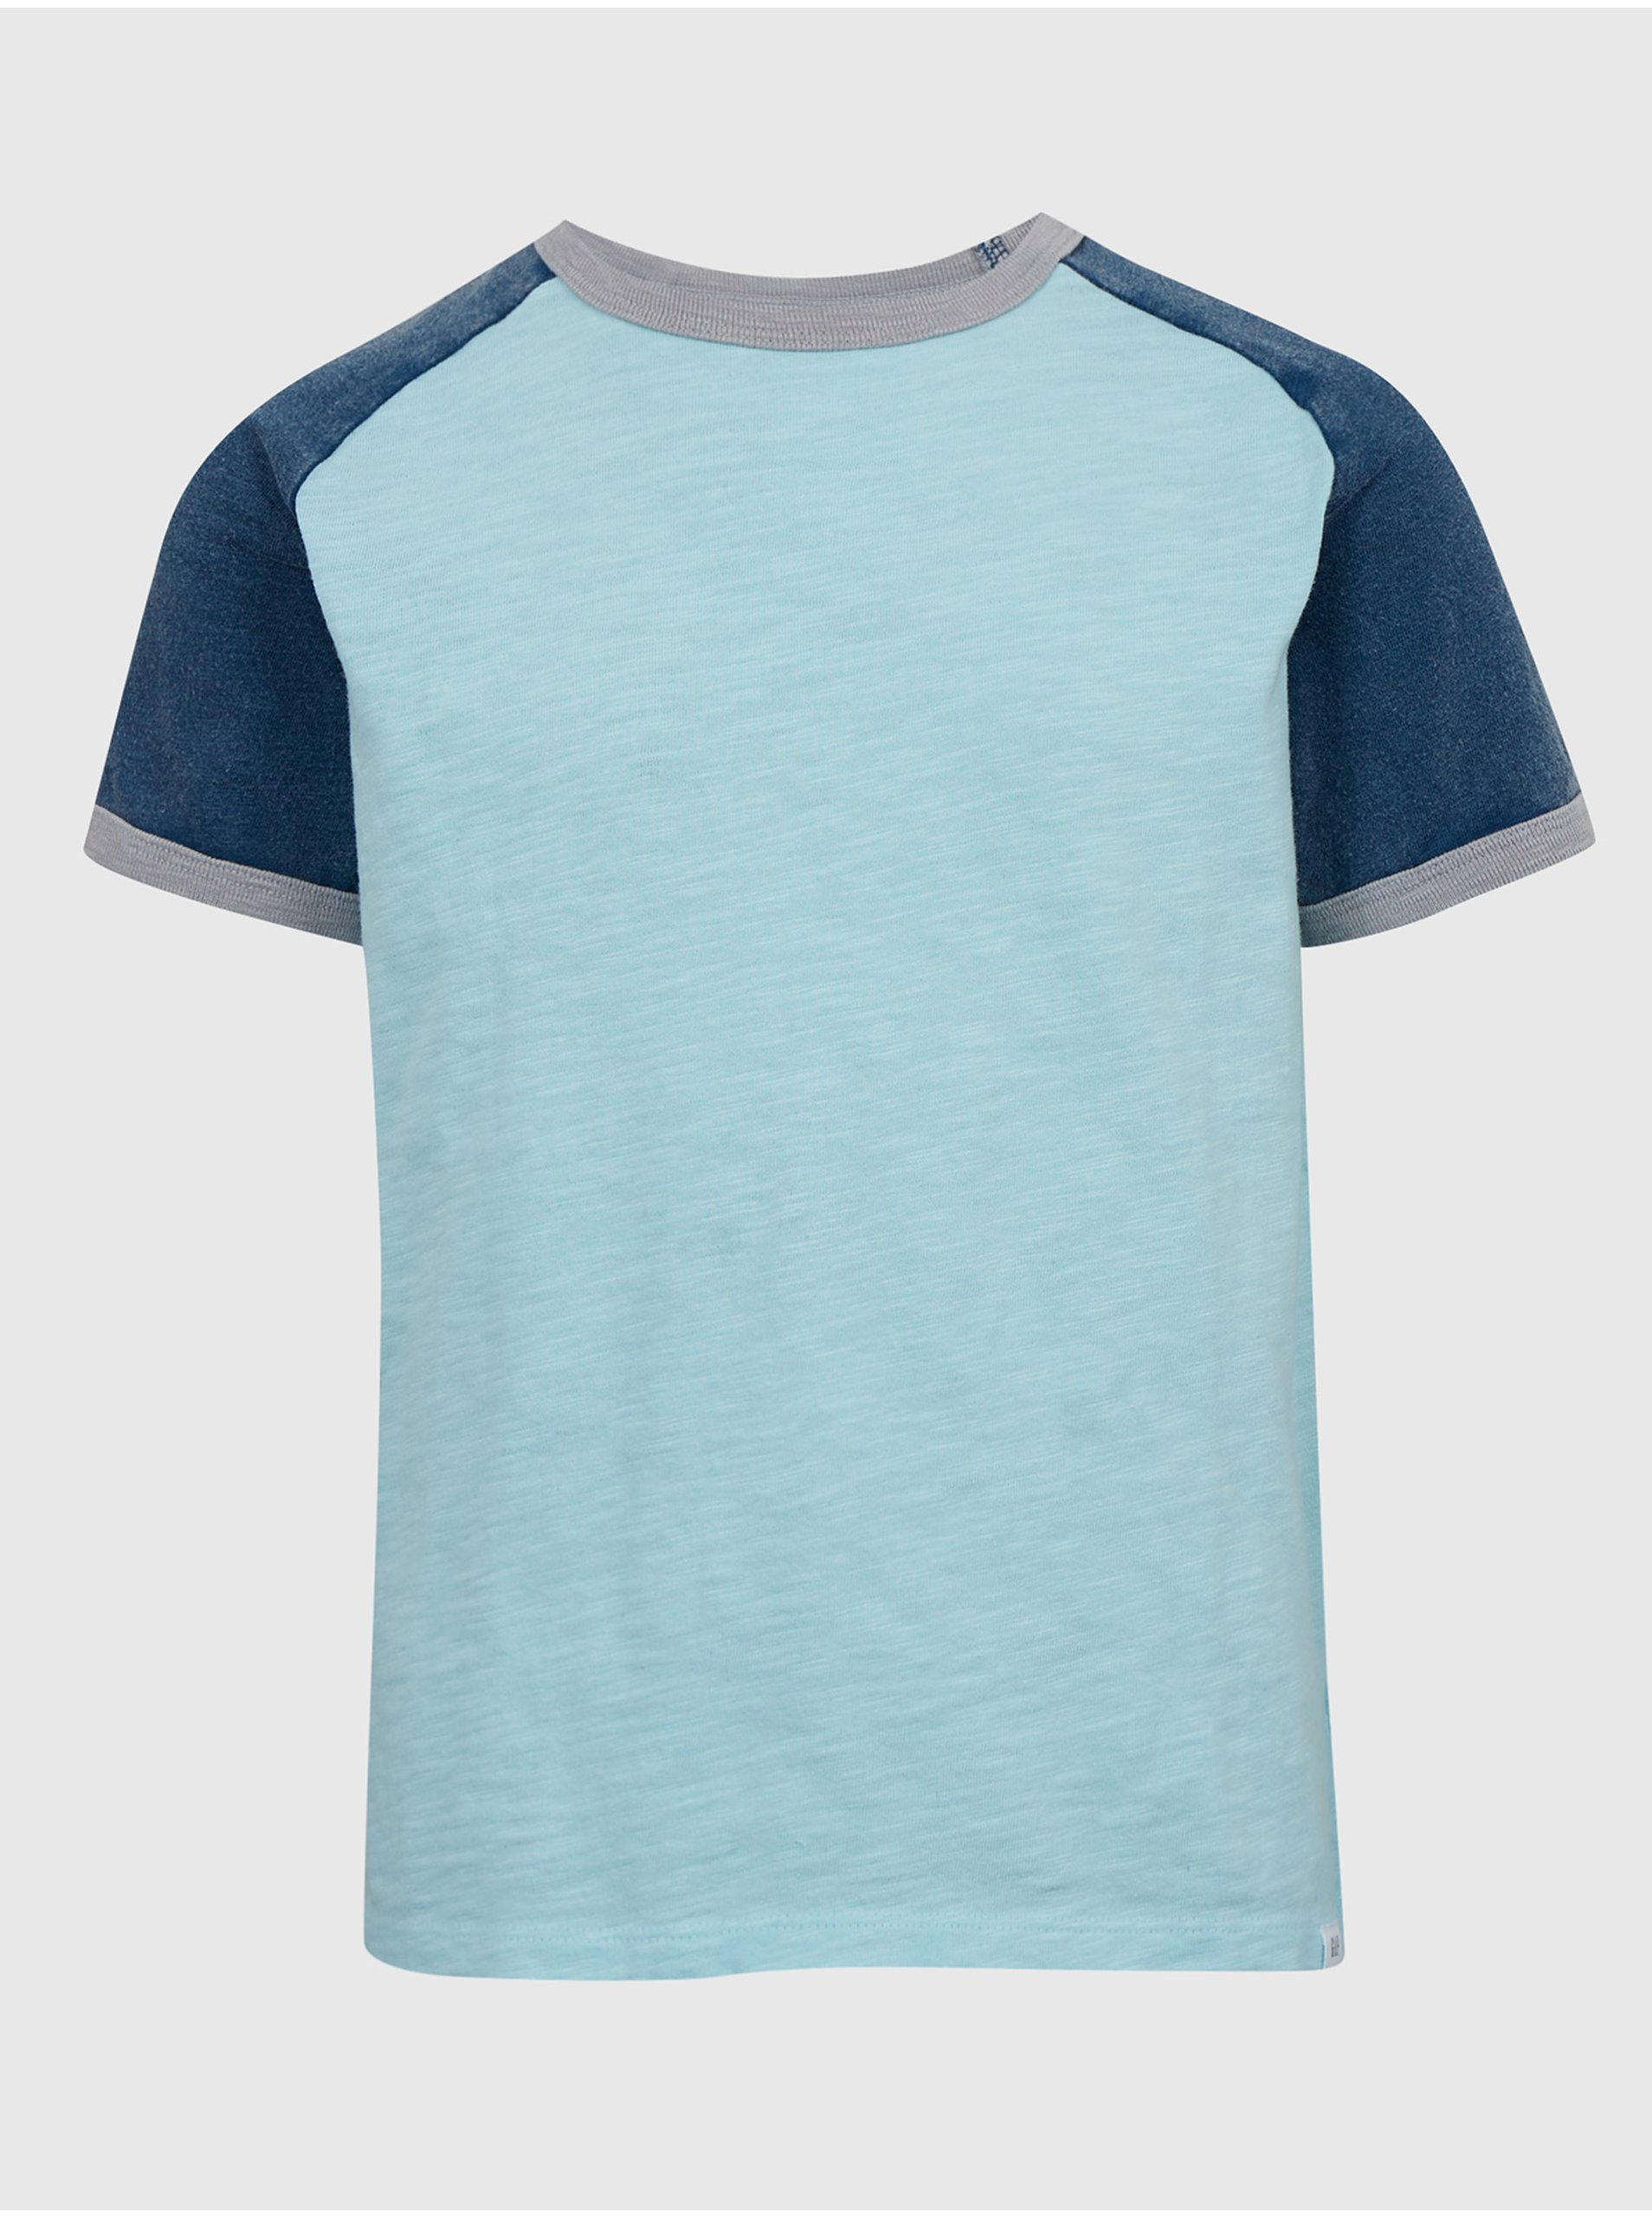 Lacno Modré chlapčenské tričko s krátkym rukávom GAP